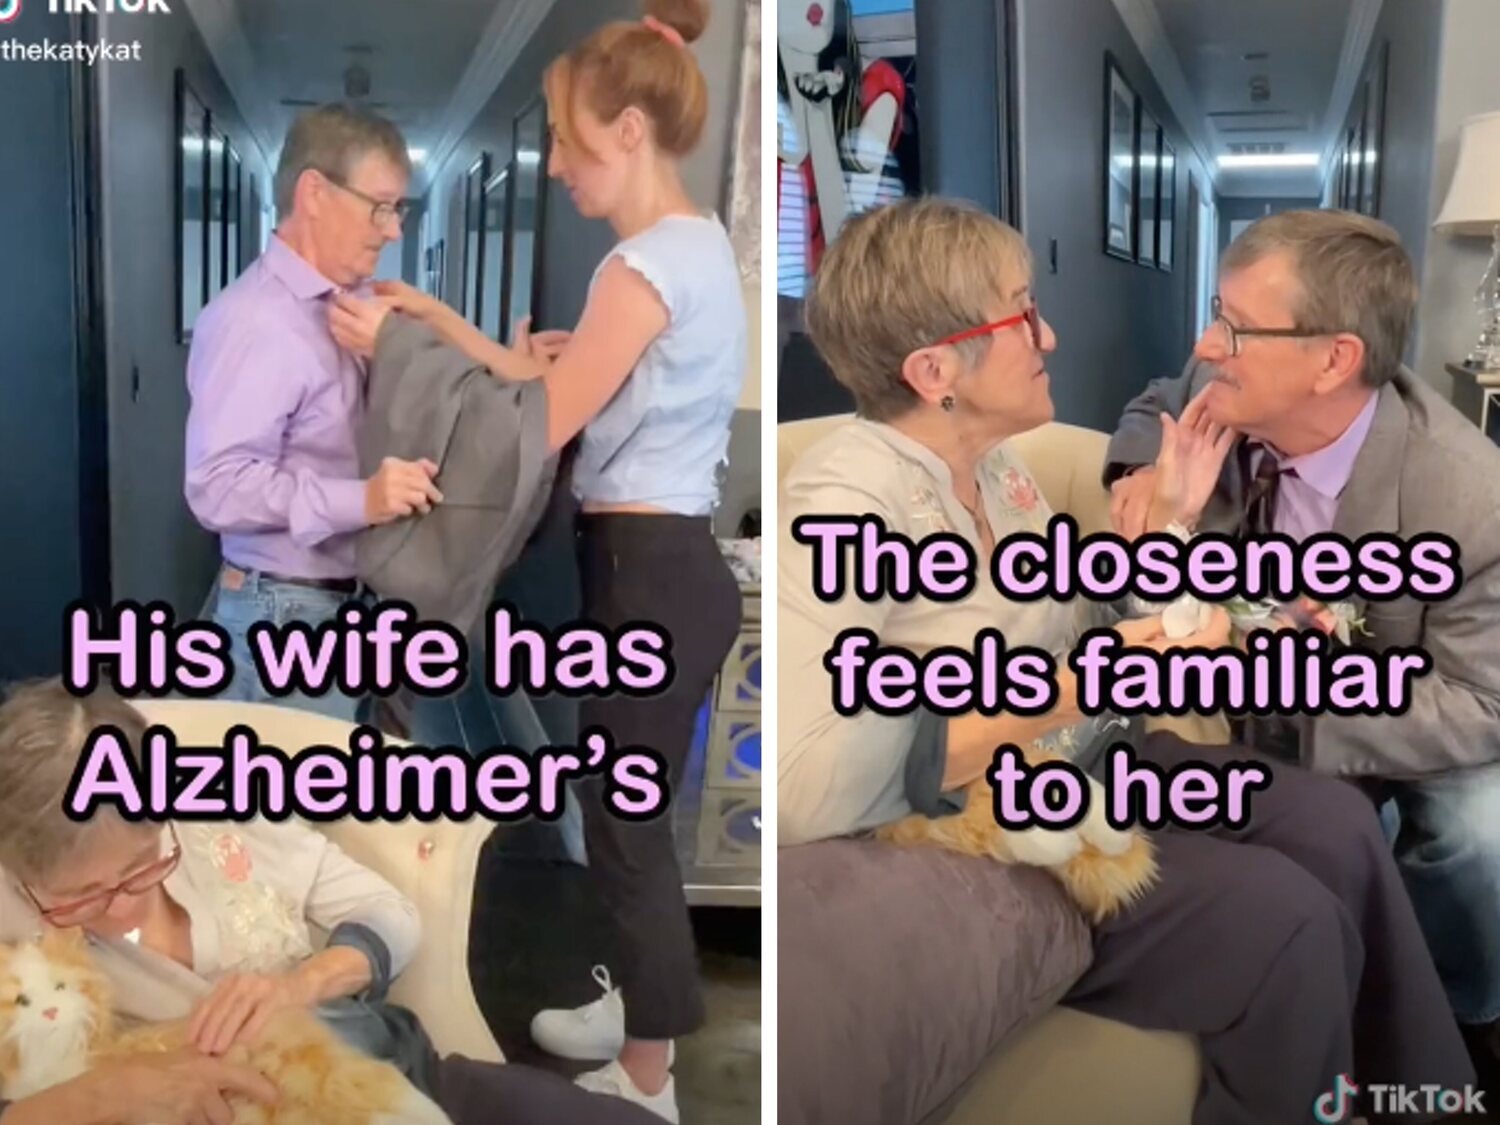 El emotivo vídeo en el que un hombre pide cada semana matrimonio a su esposa con Alzheimer